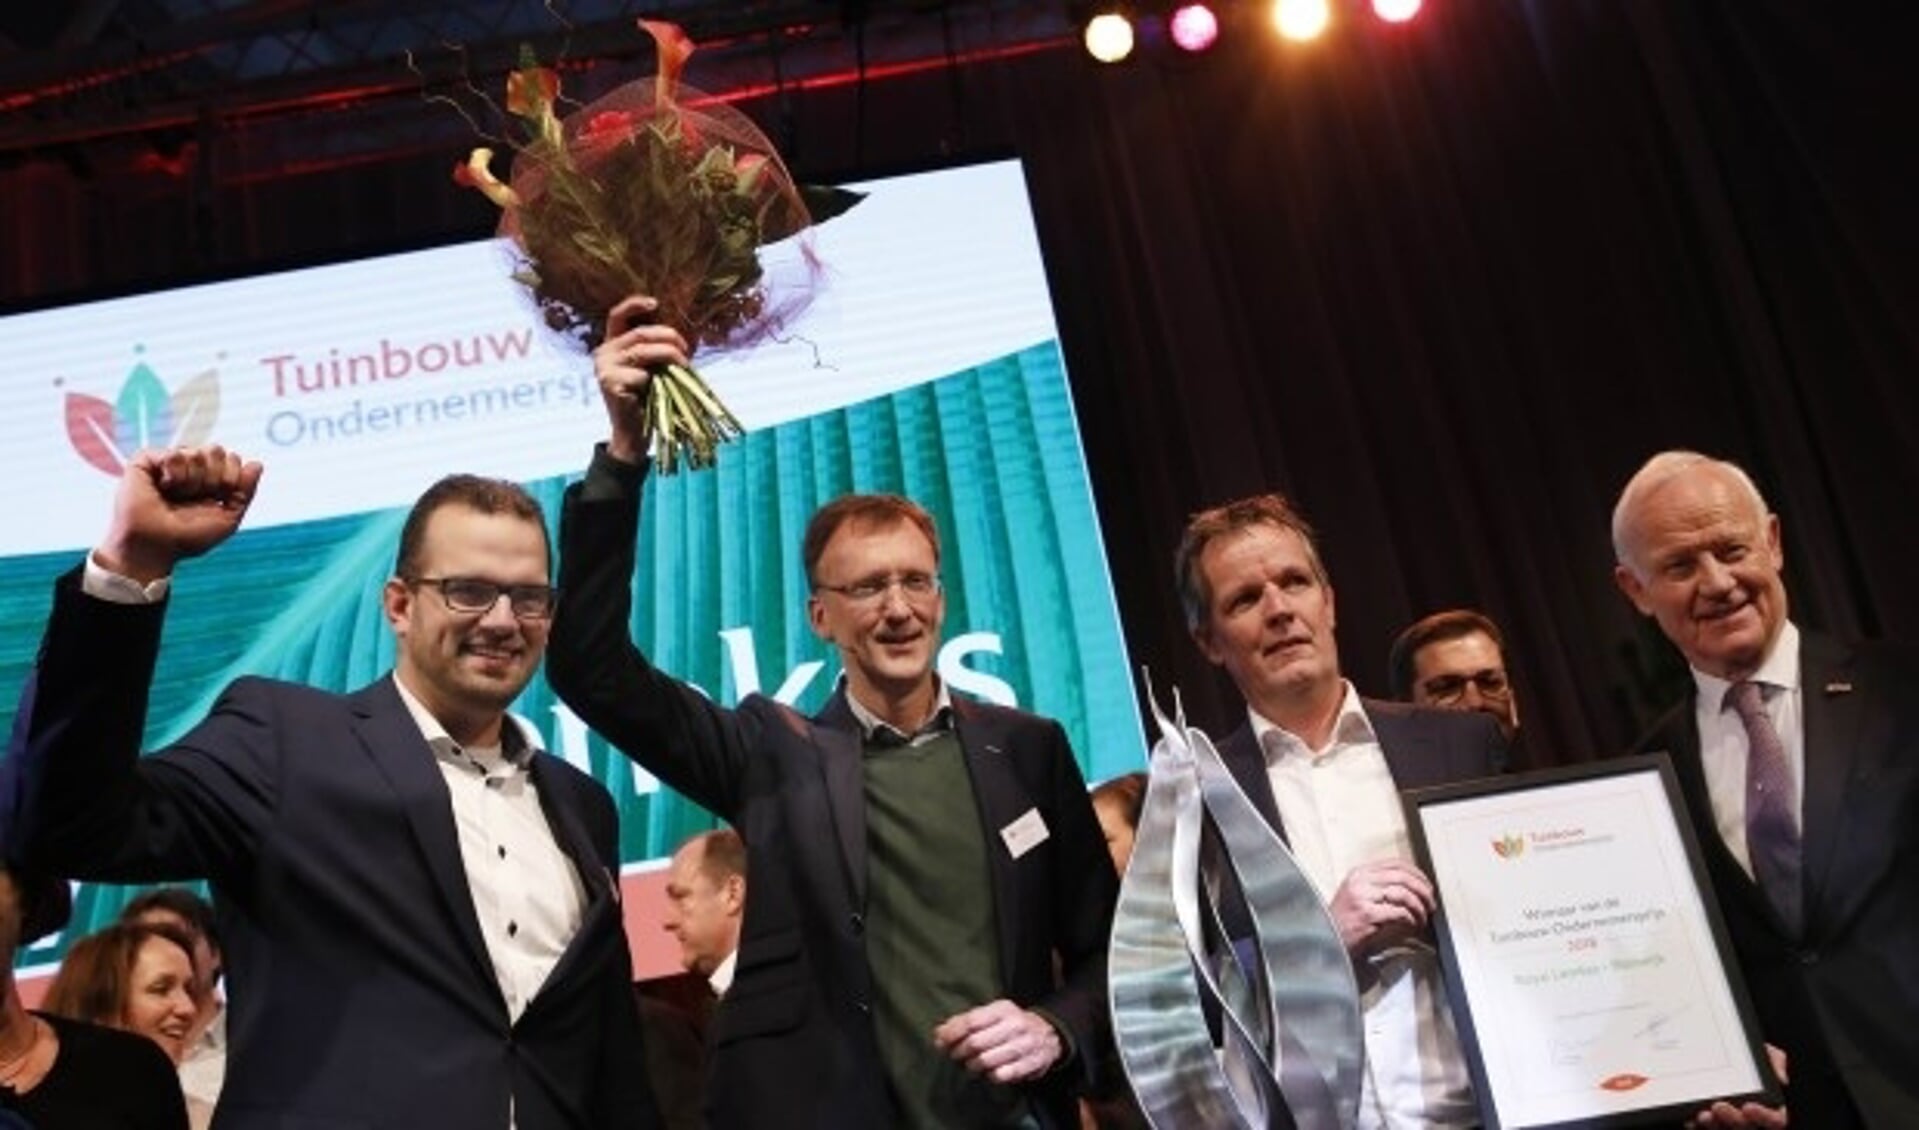 Royal Lemkes uit Bleiswijk wint Tuinbouw Ondernemersprijs 2018